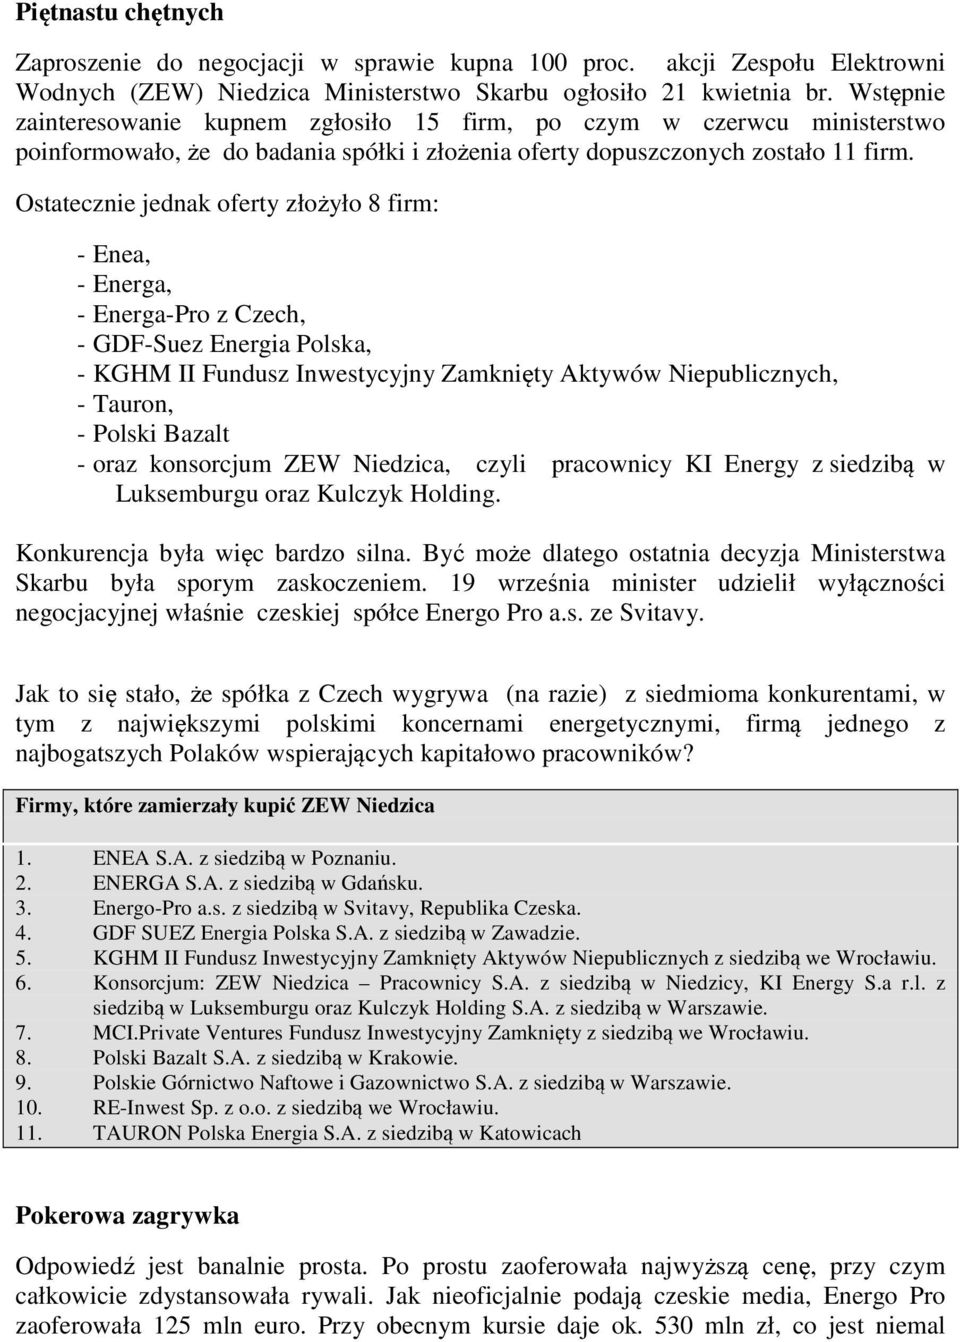 Ostatecznie jednak oferty złożyło 8 firm: - Enea, - Energa, - Energa-Pro z Czech, - GDF-Suez Energia Polska, - KGHM II Fundusz Inwestycyjny Zamknięty Aktywów Niepublicznych, - Tauron, - Polski Bazalt